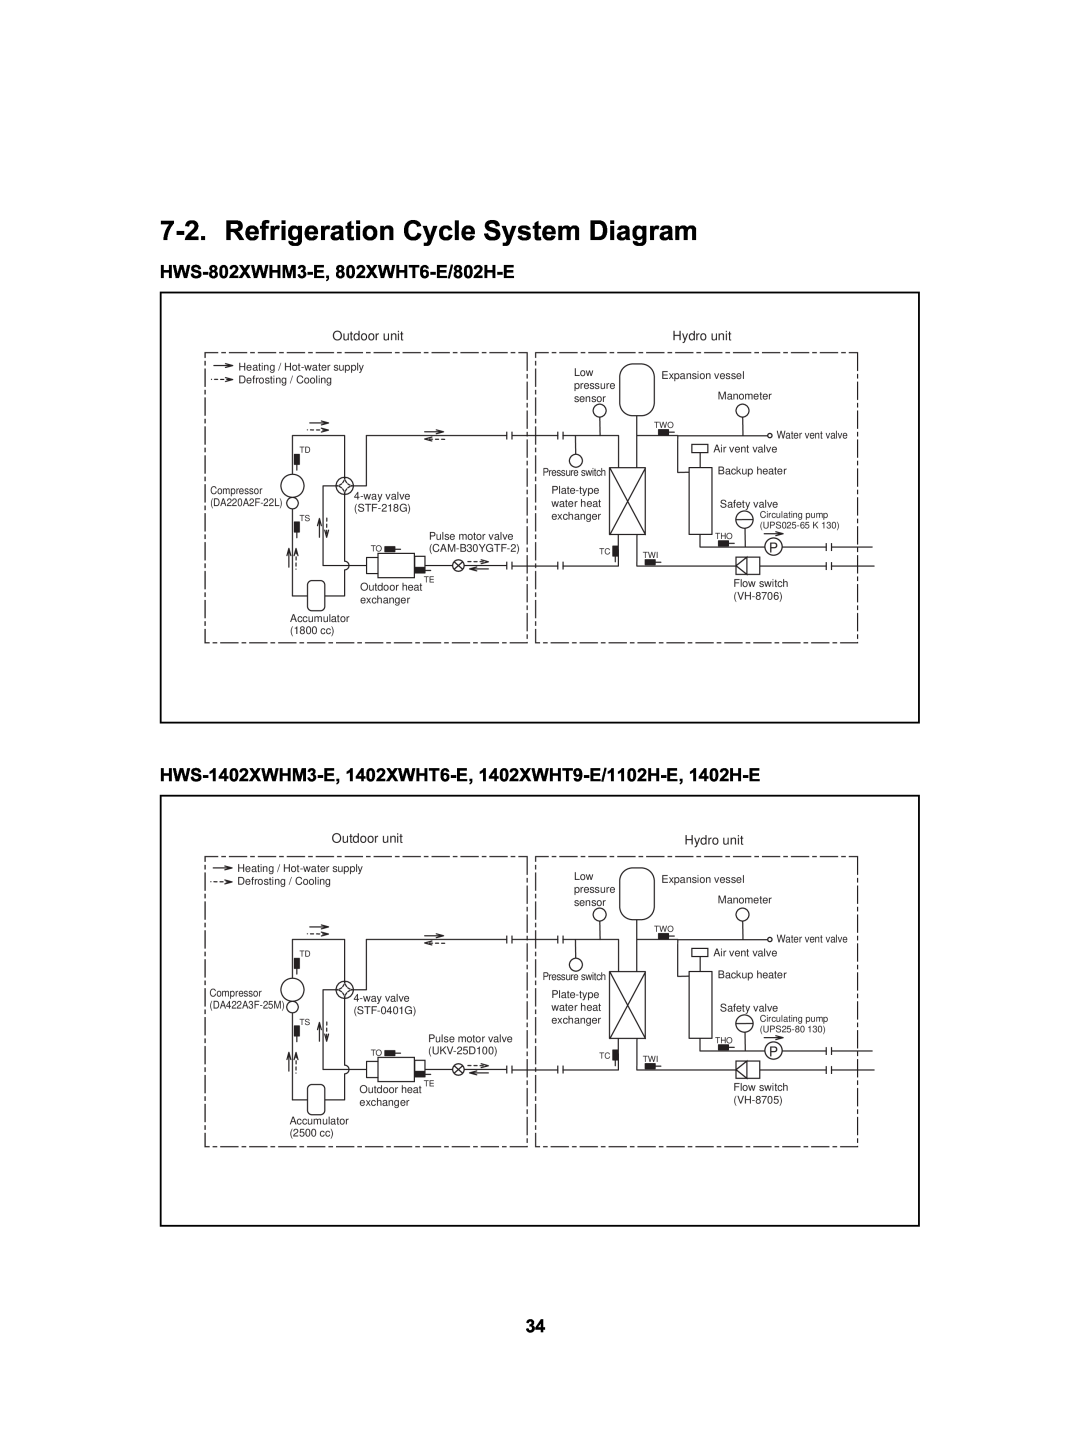 Toshiba HWS-1402H-E Refrigeration Cycle System Diagram, HWS-802XWHM3-E, 802XWHT6-E/802H-E, Refrigerant, R410A ... 1.8 kg 